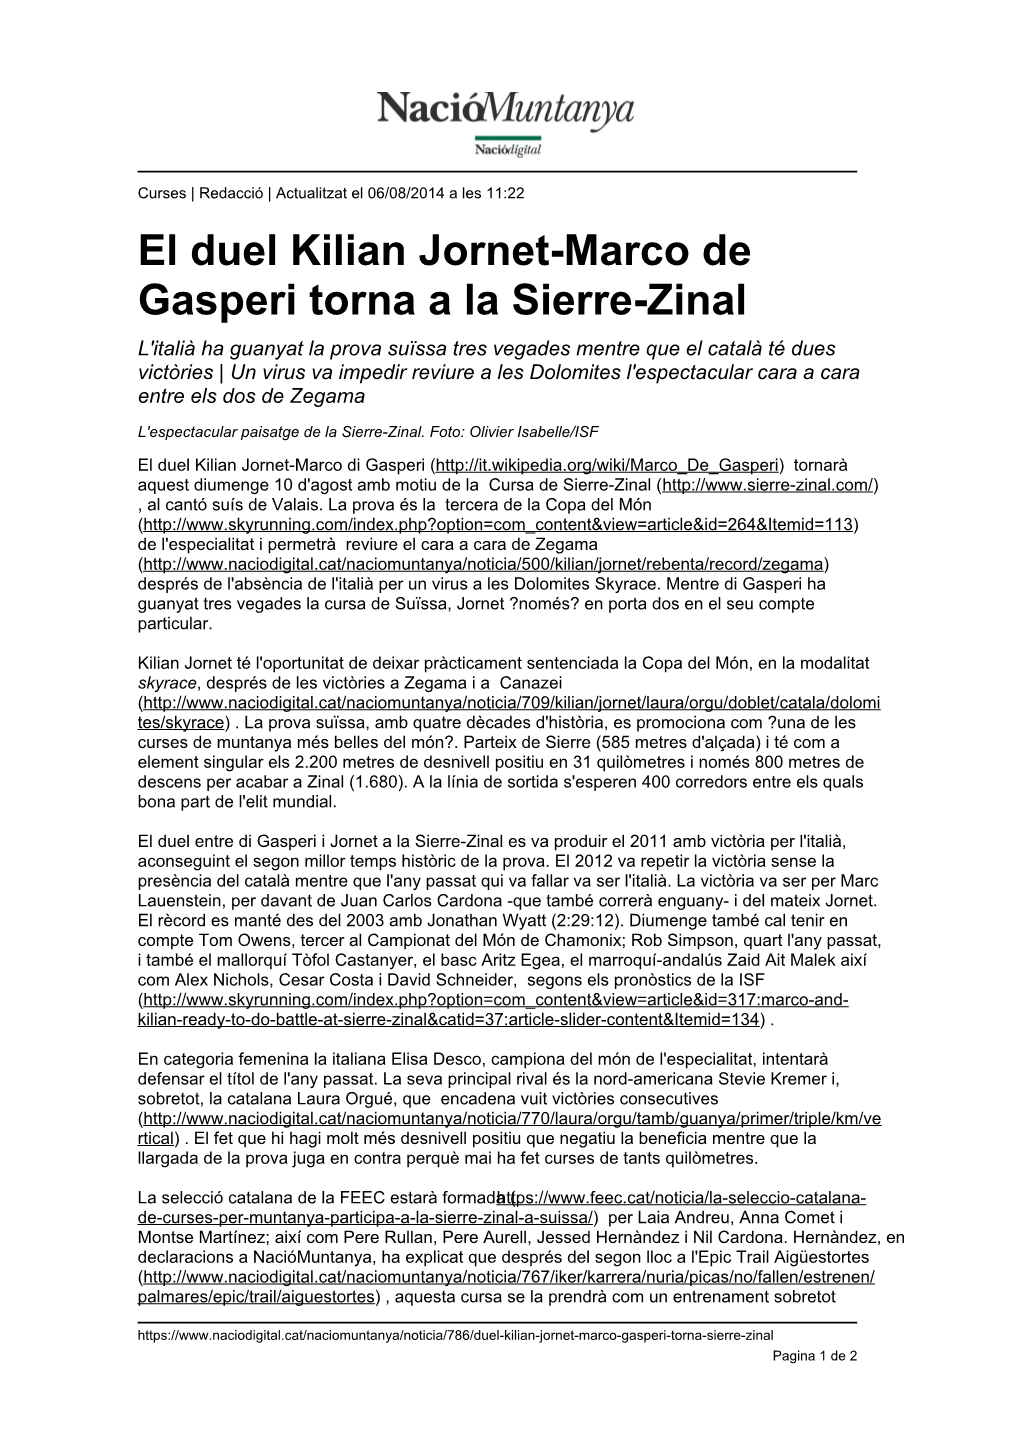 El Duel Kilian Jornet-Marco De Gasperi Torna a La Sierre-Zinal